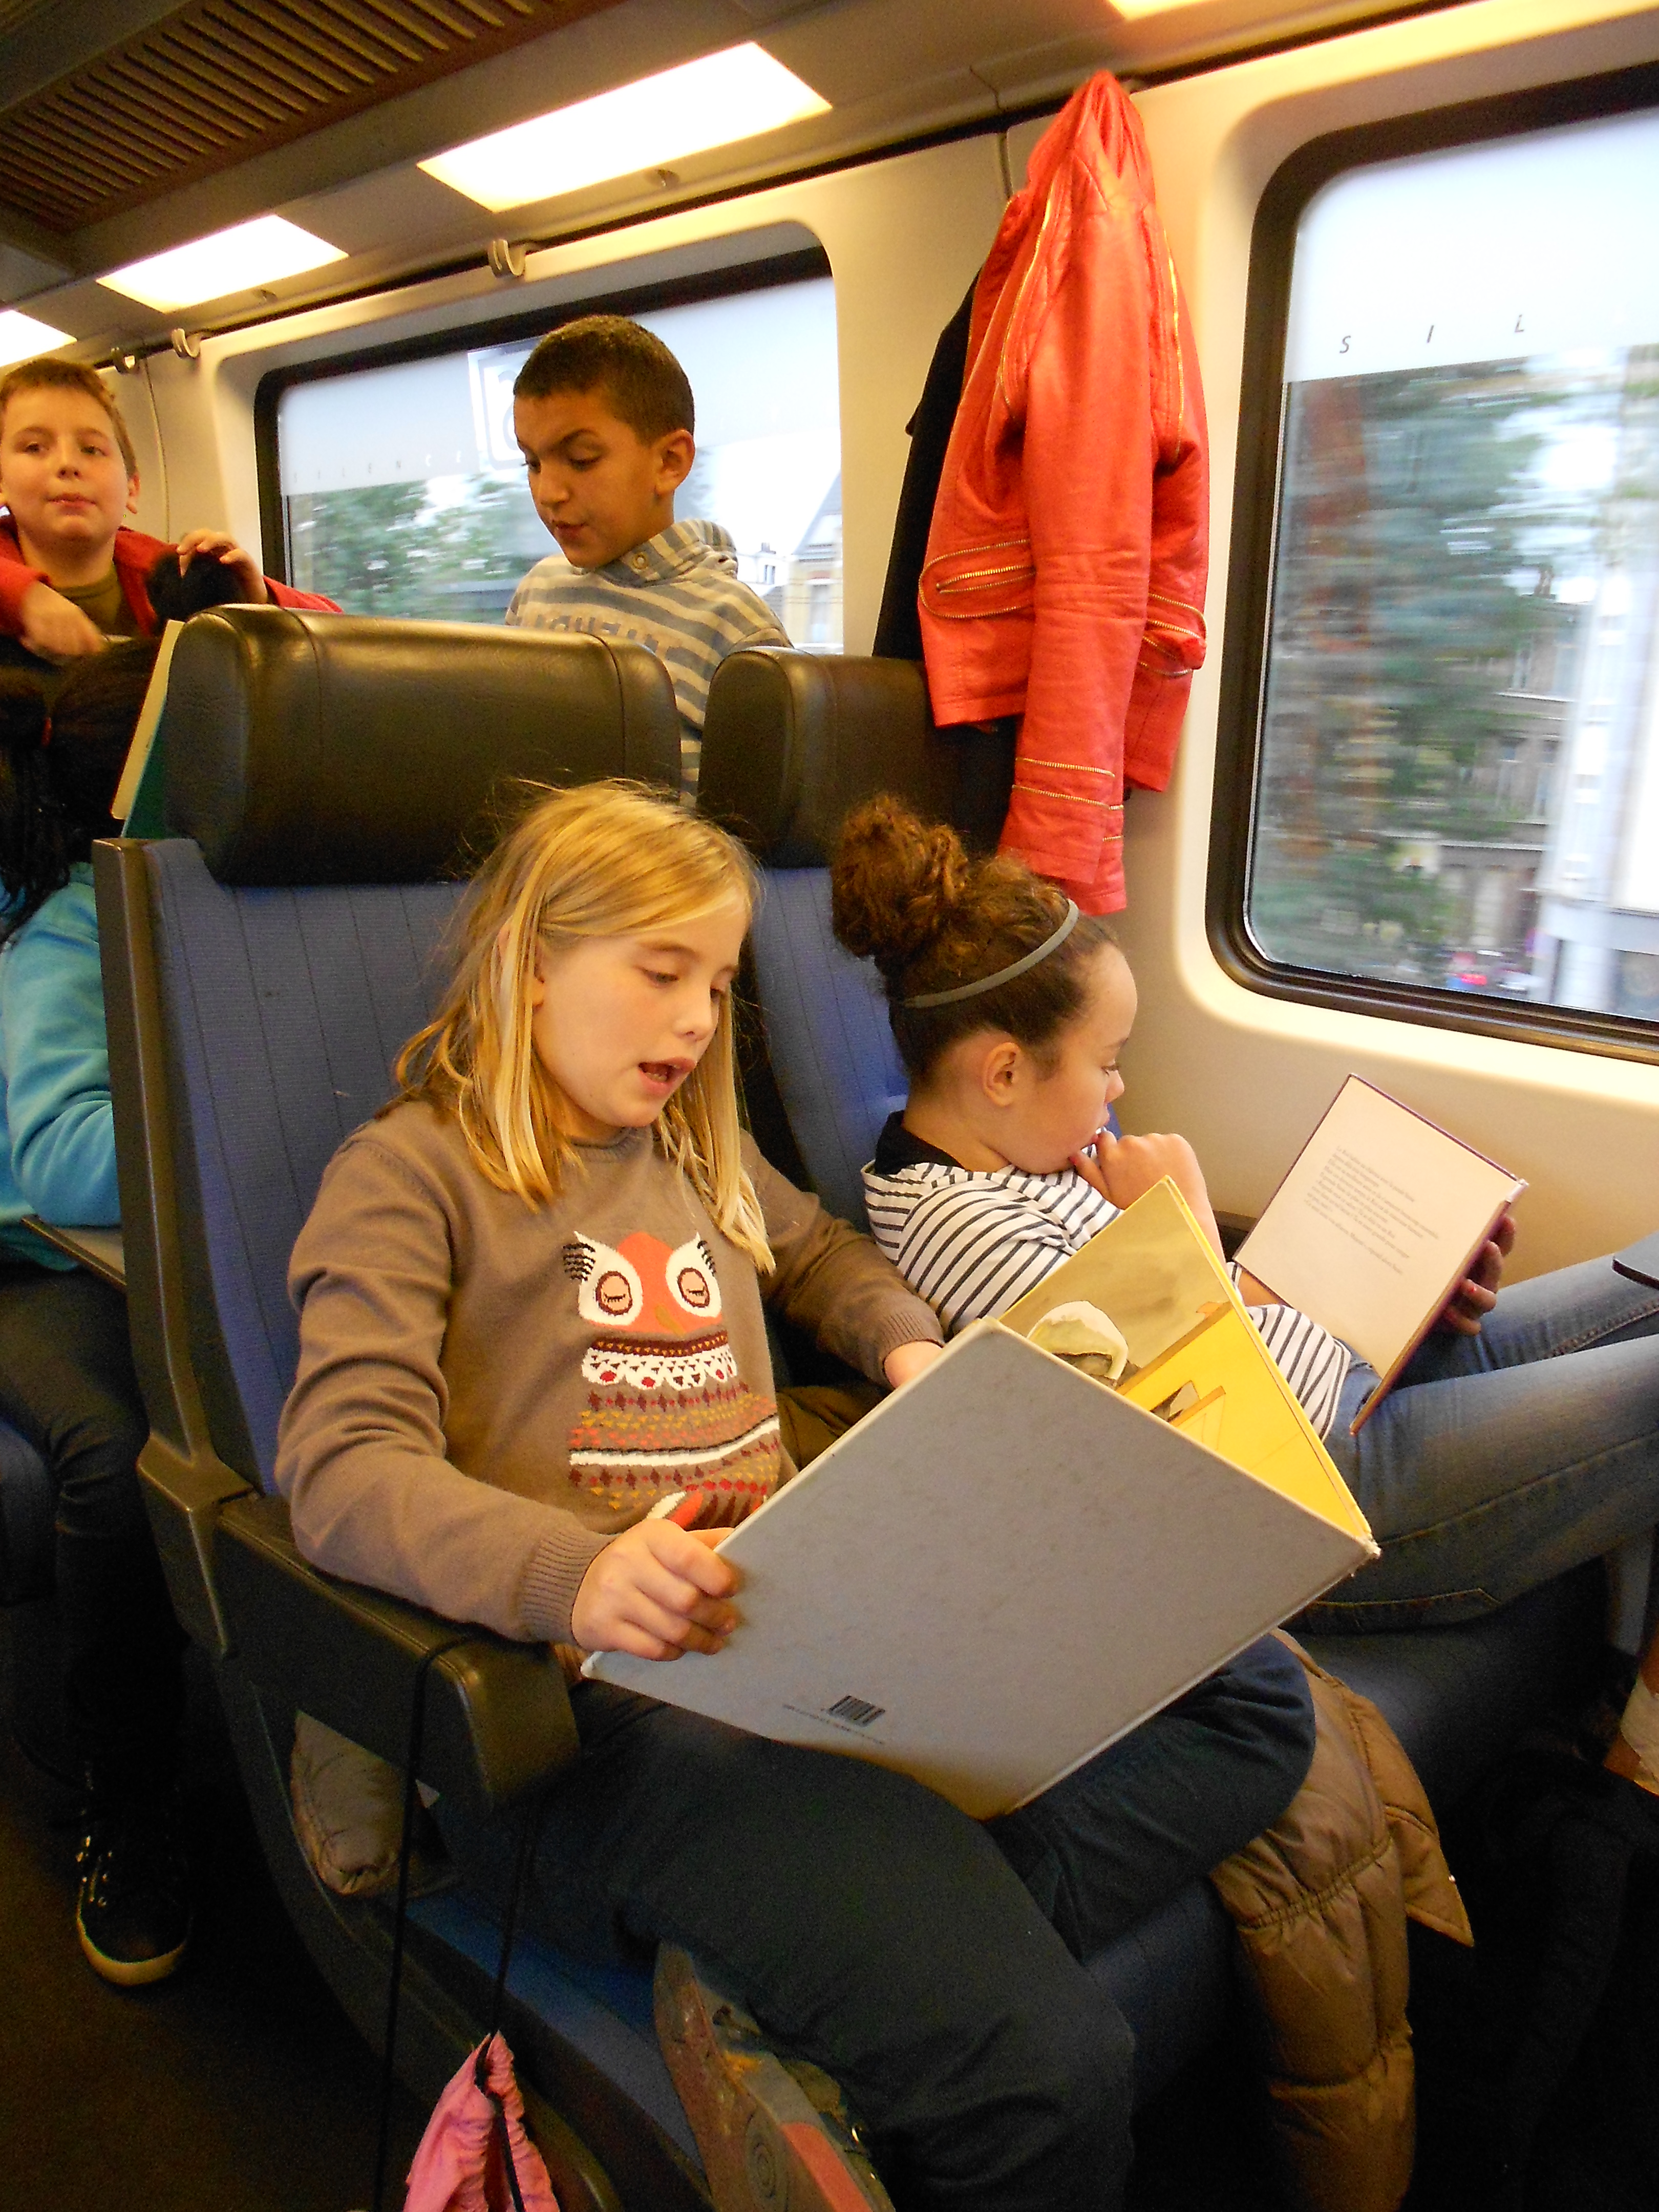 Moment de lecture plaisir dans le train